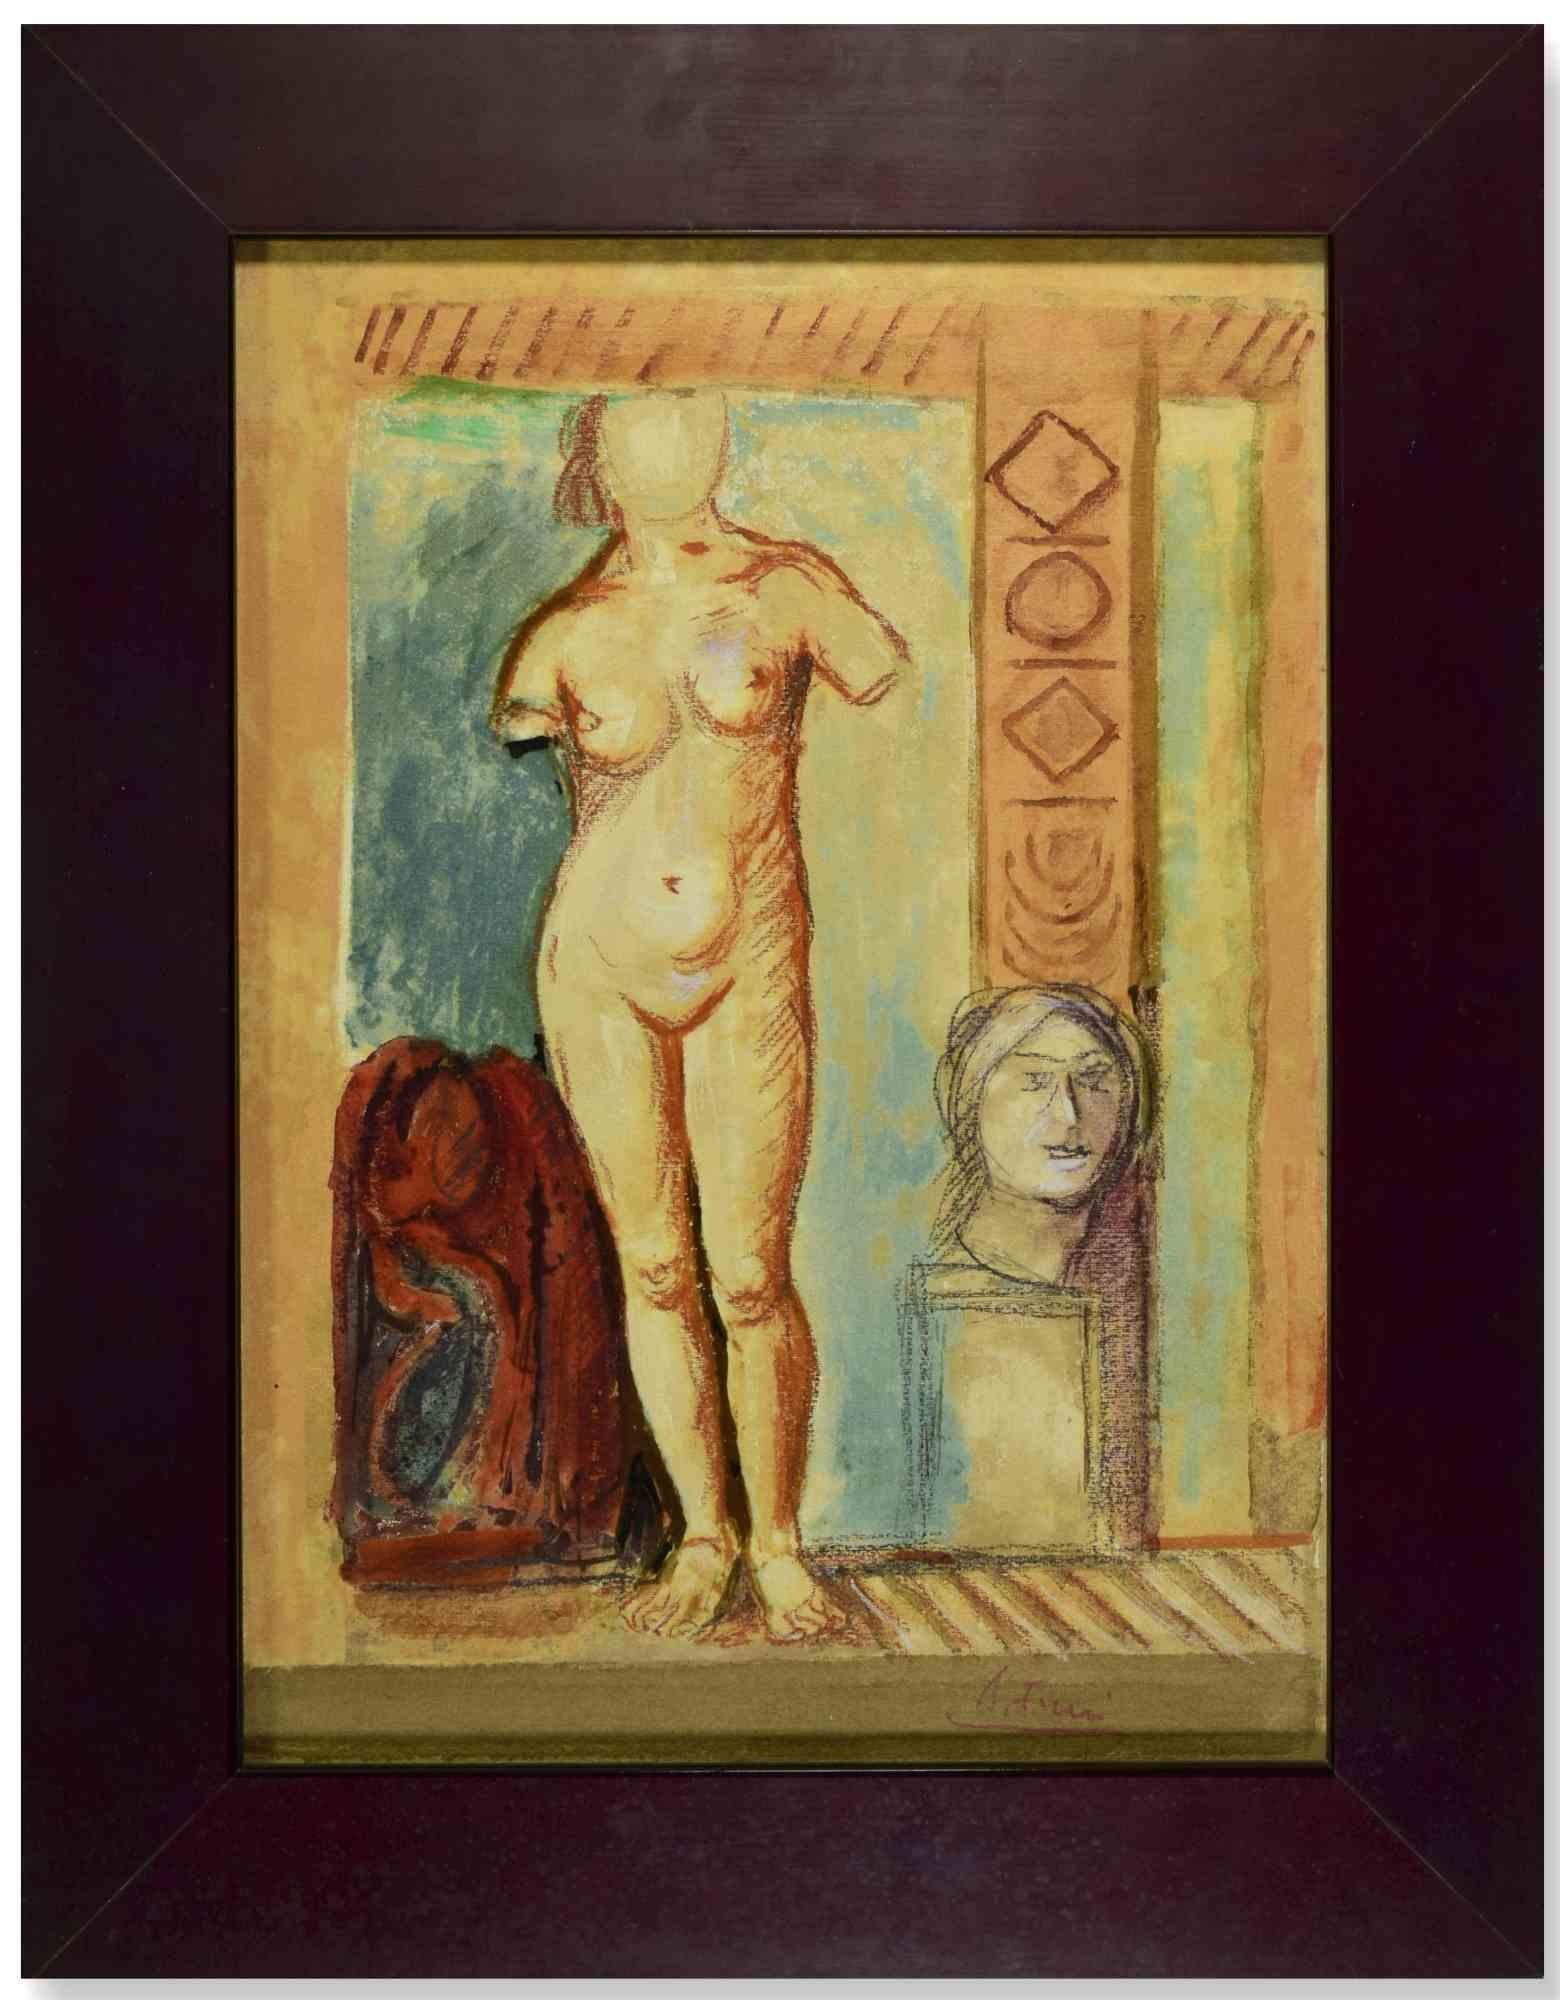 Der weibliche Akt ist ein modernes Kunstwerk, das von Achille Funi Anfang des 20. Jahrhunderts geschaffen wurde.

Gemischte Medien auf Sperrholz.

Handsigniert am unteren Rand.

Einschließlich Rahmen.